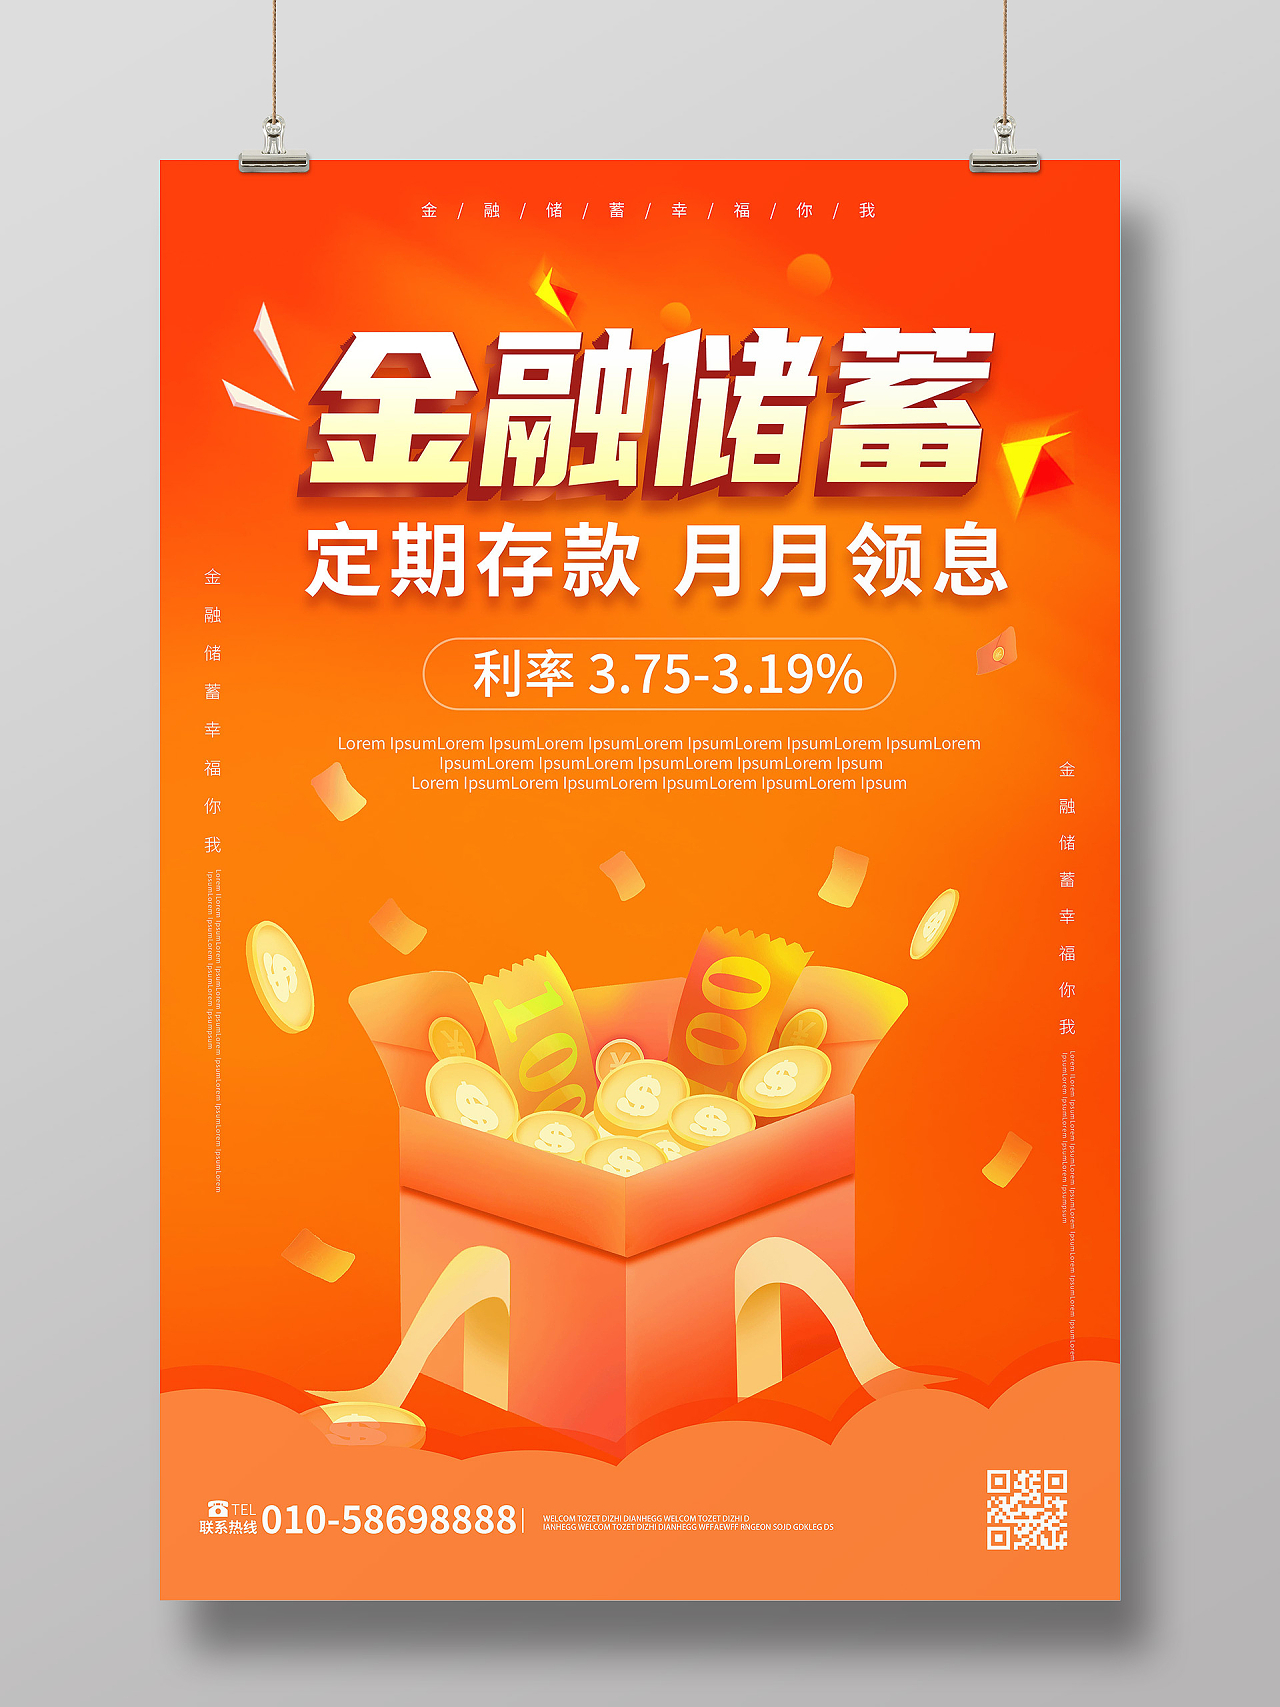 橙色背景创意简洁金融储蓄定期存款海报设计兴业银行